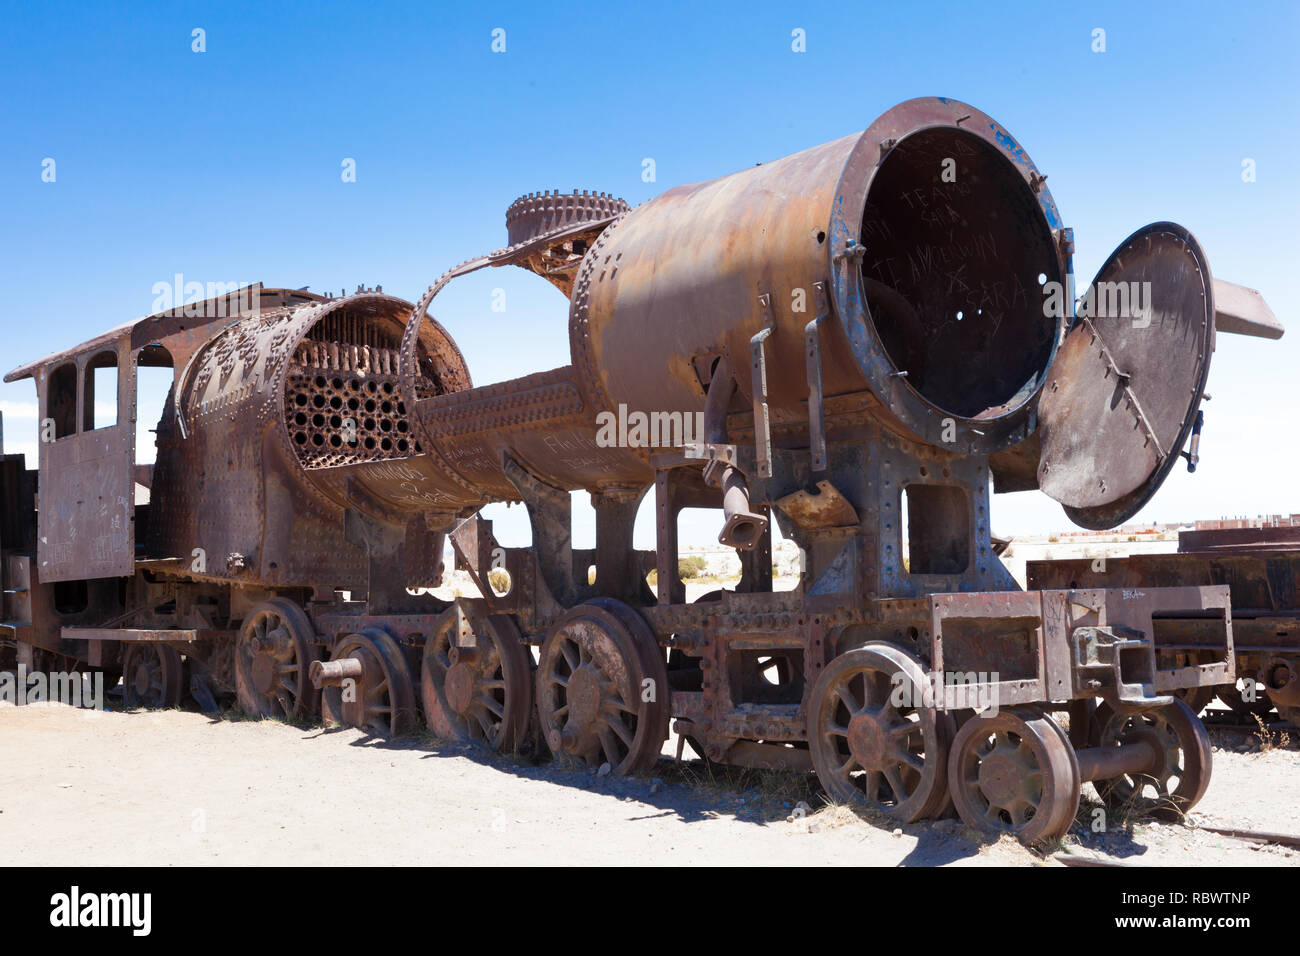 Der Zug Friedhof außerhalb von Uyuni, Bolivien, enthält eine große Anzahl von abgebrochenen Lokomotiven einen einmaligen skulpturale Funktion in der Wüste. Stockfoto